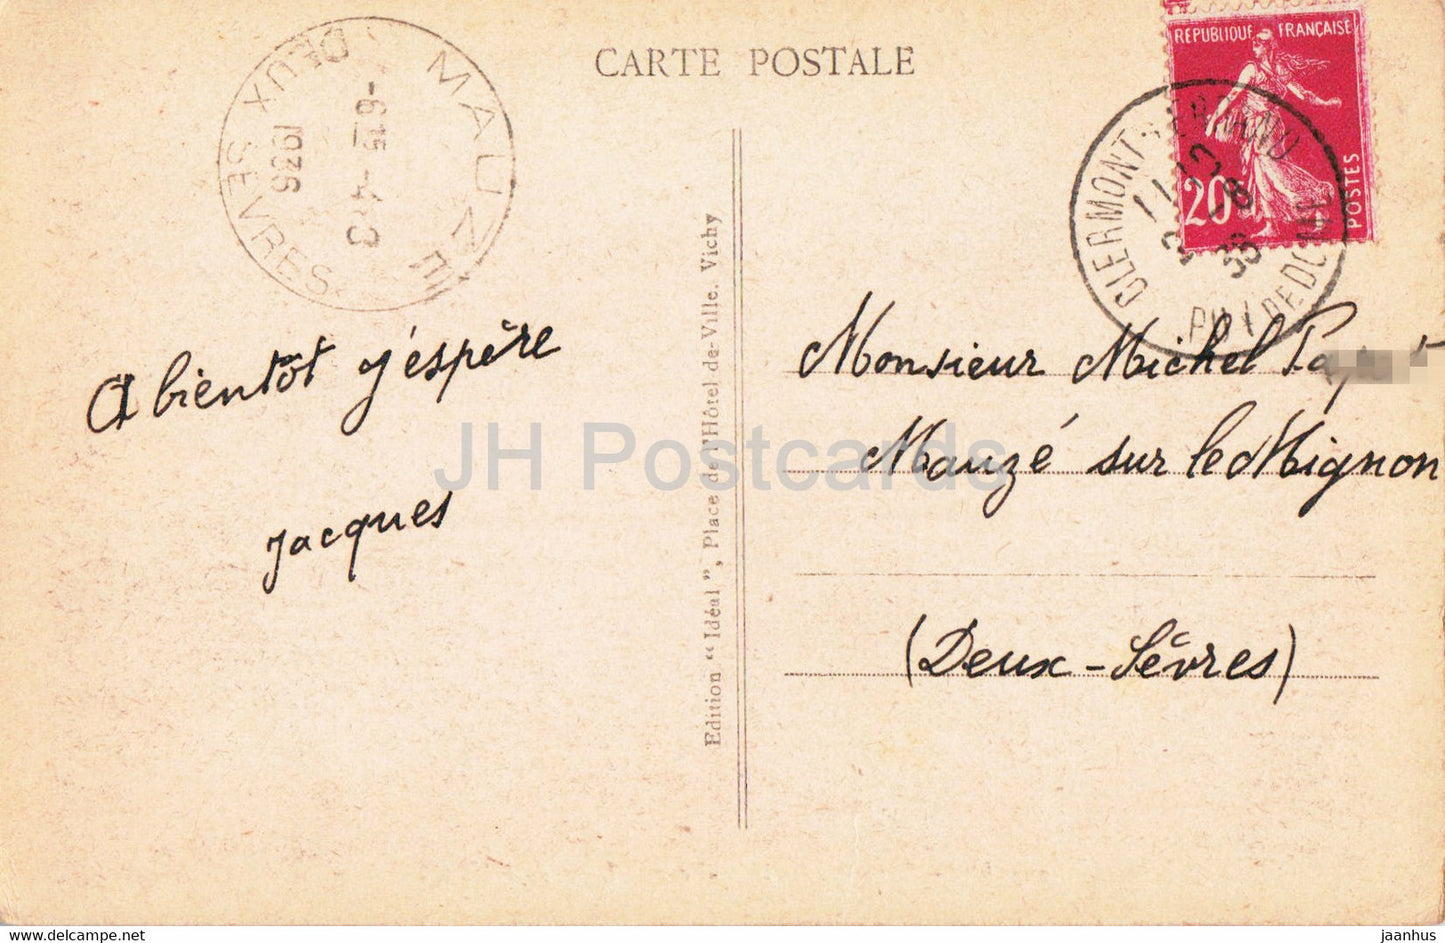 Environs du Mont Dore - Lac de Guery - 3131 - old postcard - 1936 - France - used